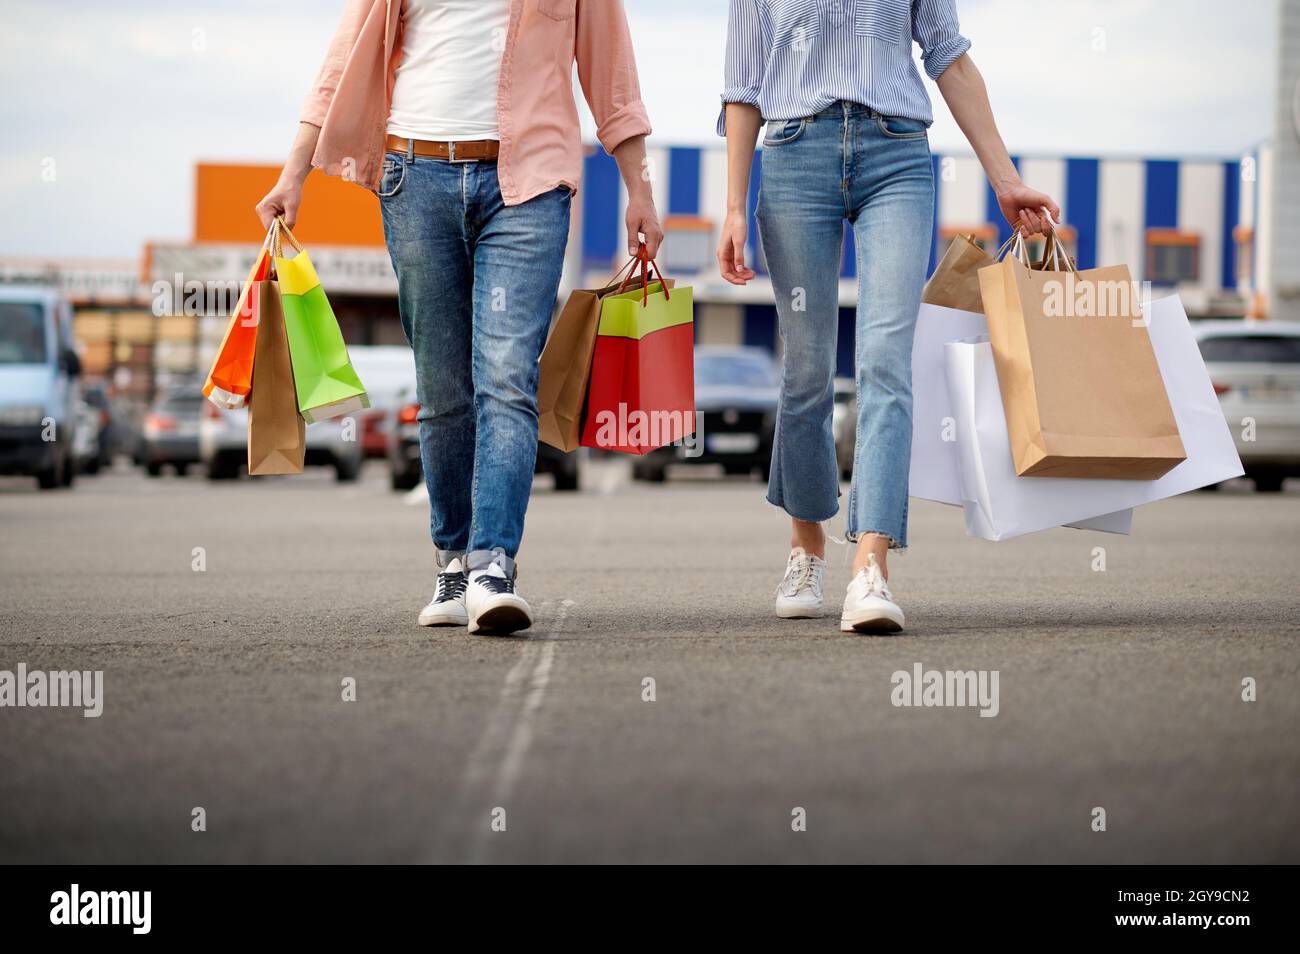 Mann und Frau mit Papptüten auf dem Parkplatz im Supermarkt. Zufriedene Kunden mit Einkäufen im Einkaufszentrum, Fahrzeuge im Hintergrund Stockfoto